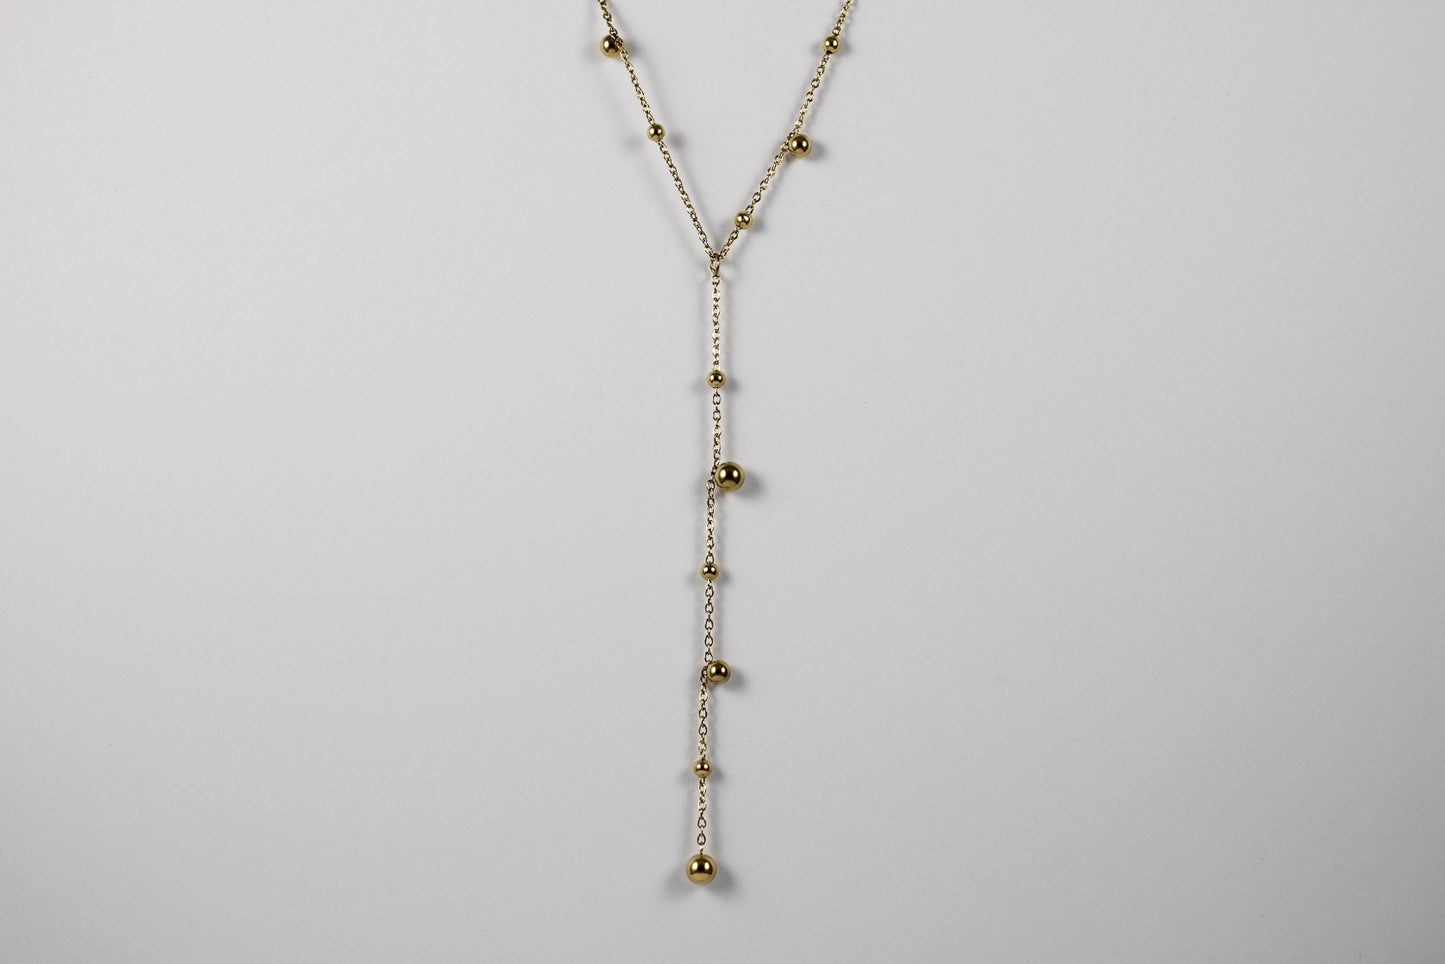 Golden Ceibo necklace